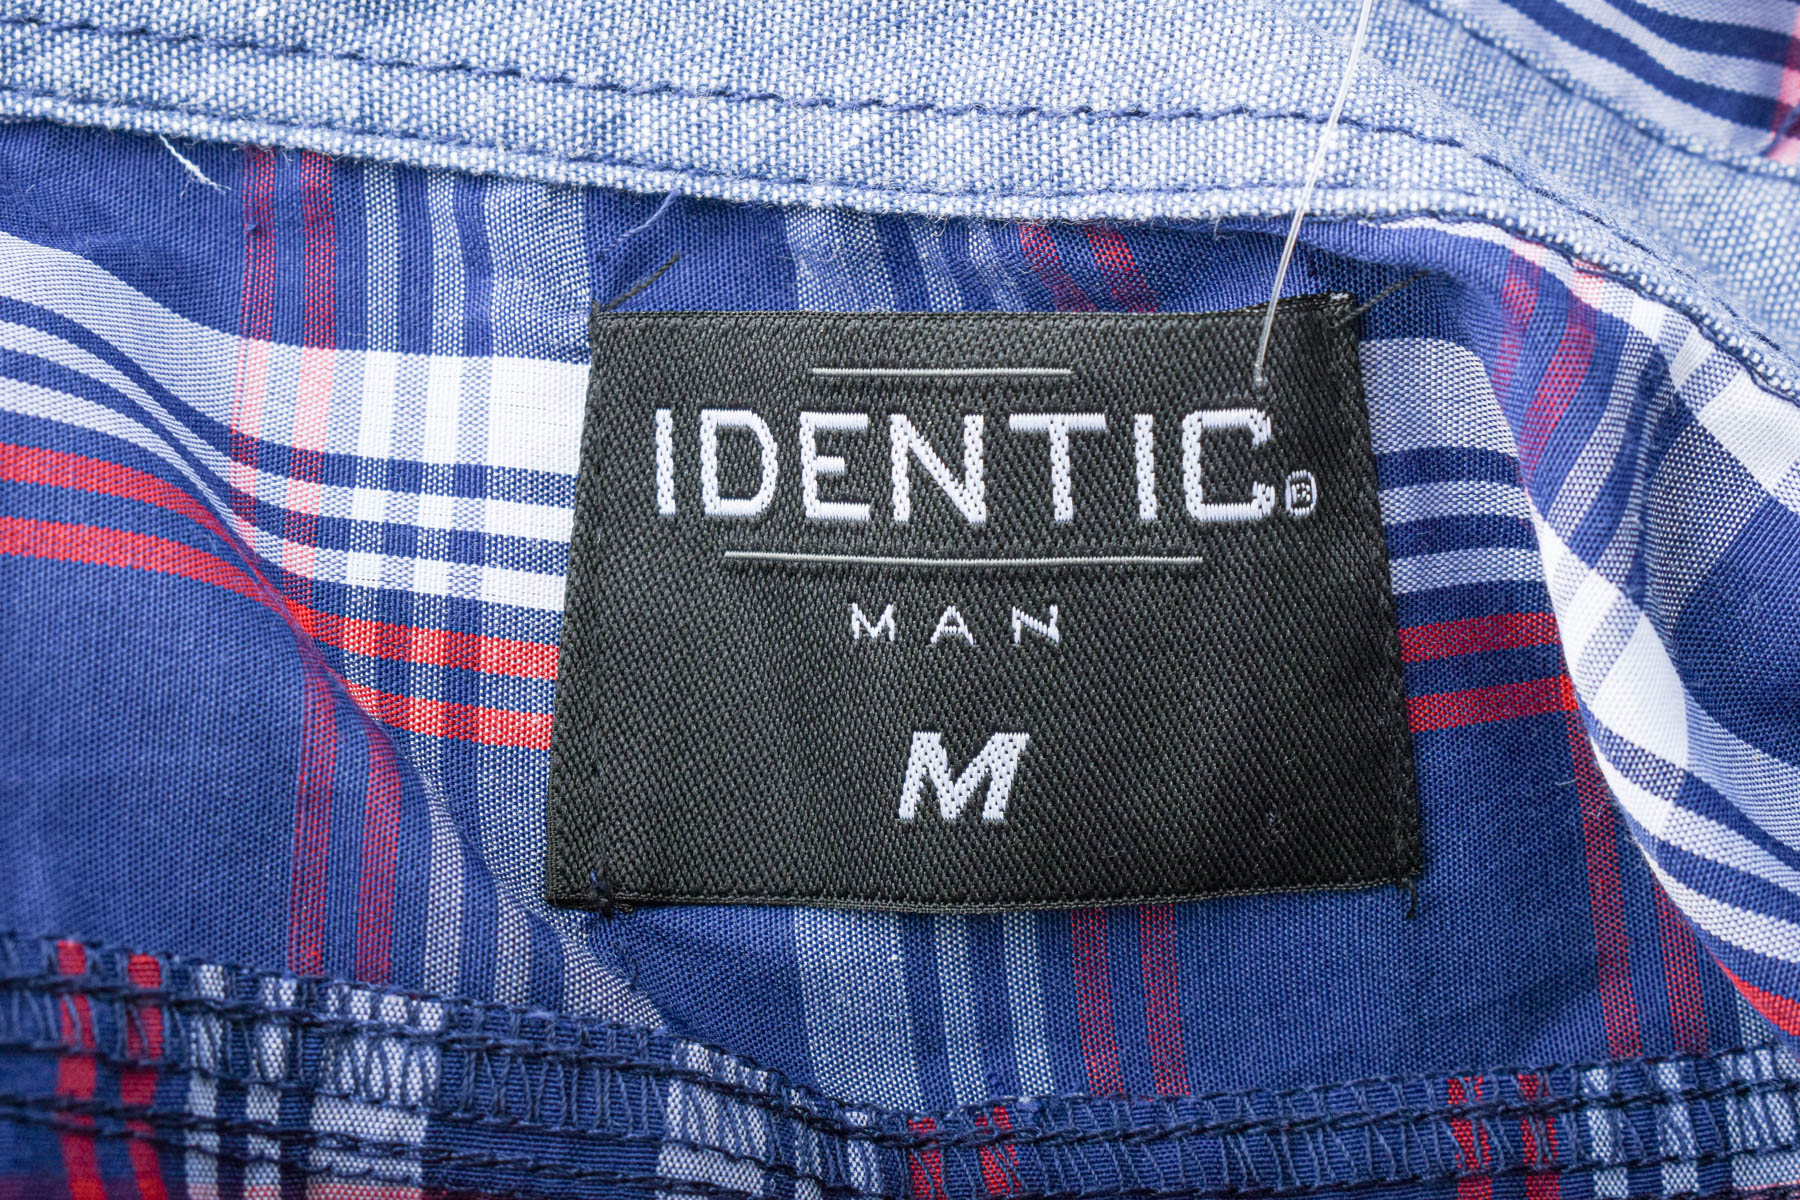 Ανδρικό πουκάμισο - Identic - 2